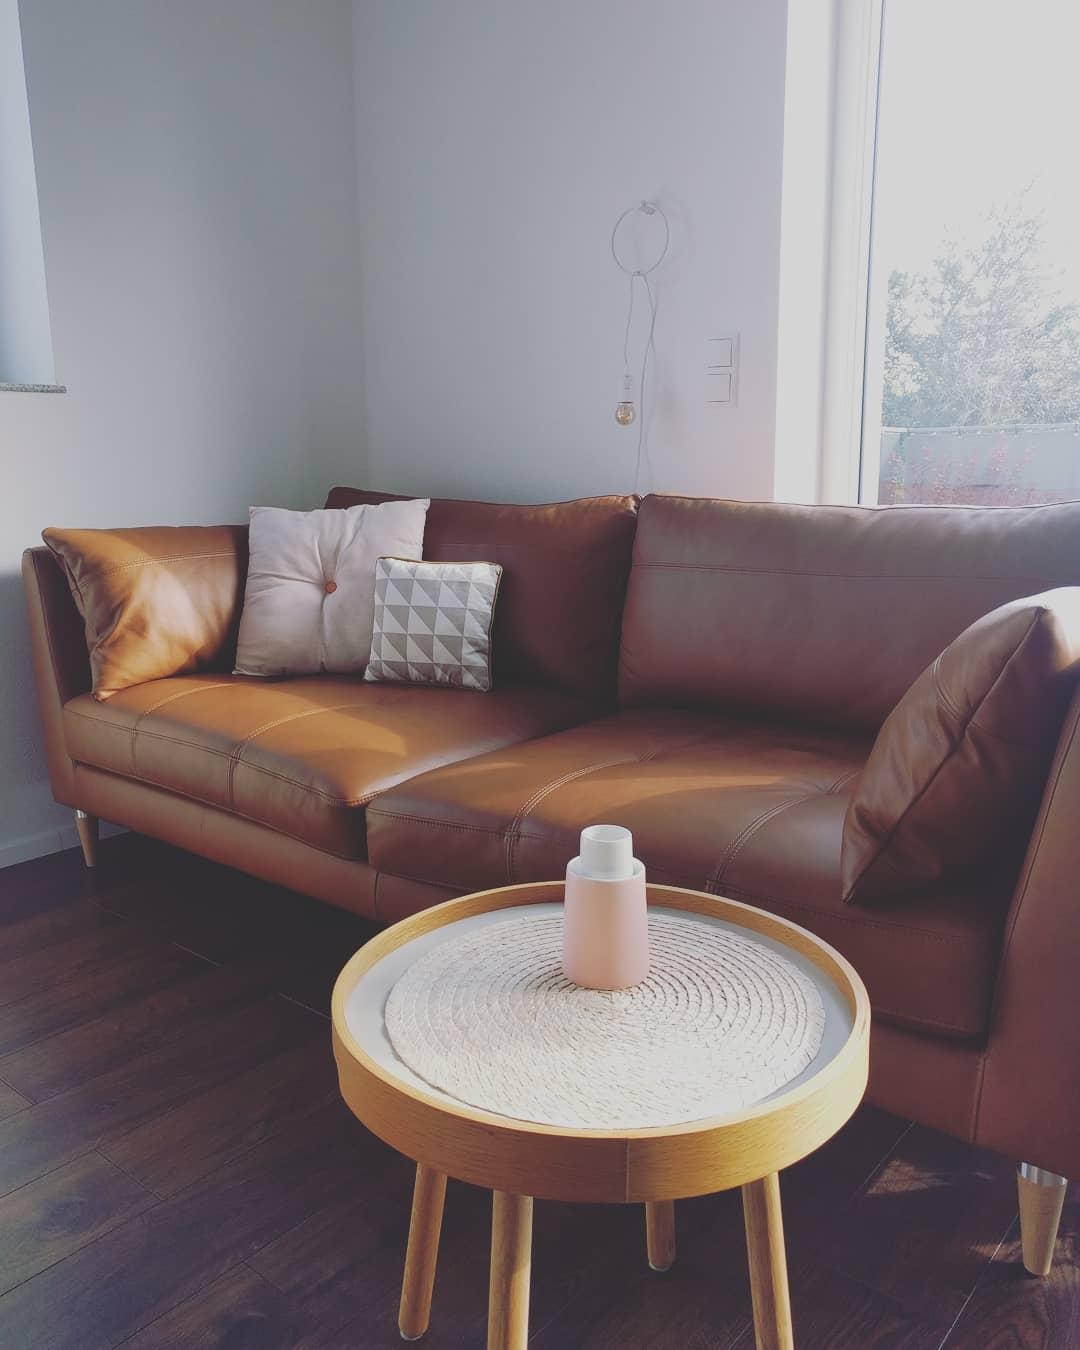 #wohnzimmer#couch#ledercouch#dekoinspiration#minimalistisch#rosa#asavase#fermliving#interior#couchliebt